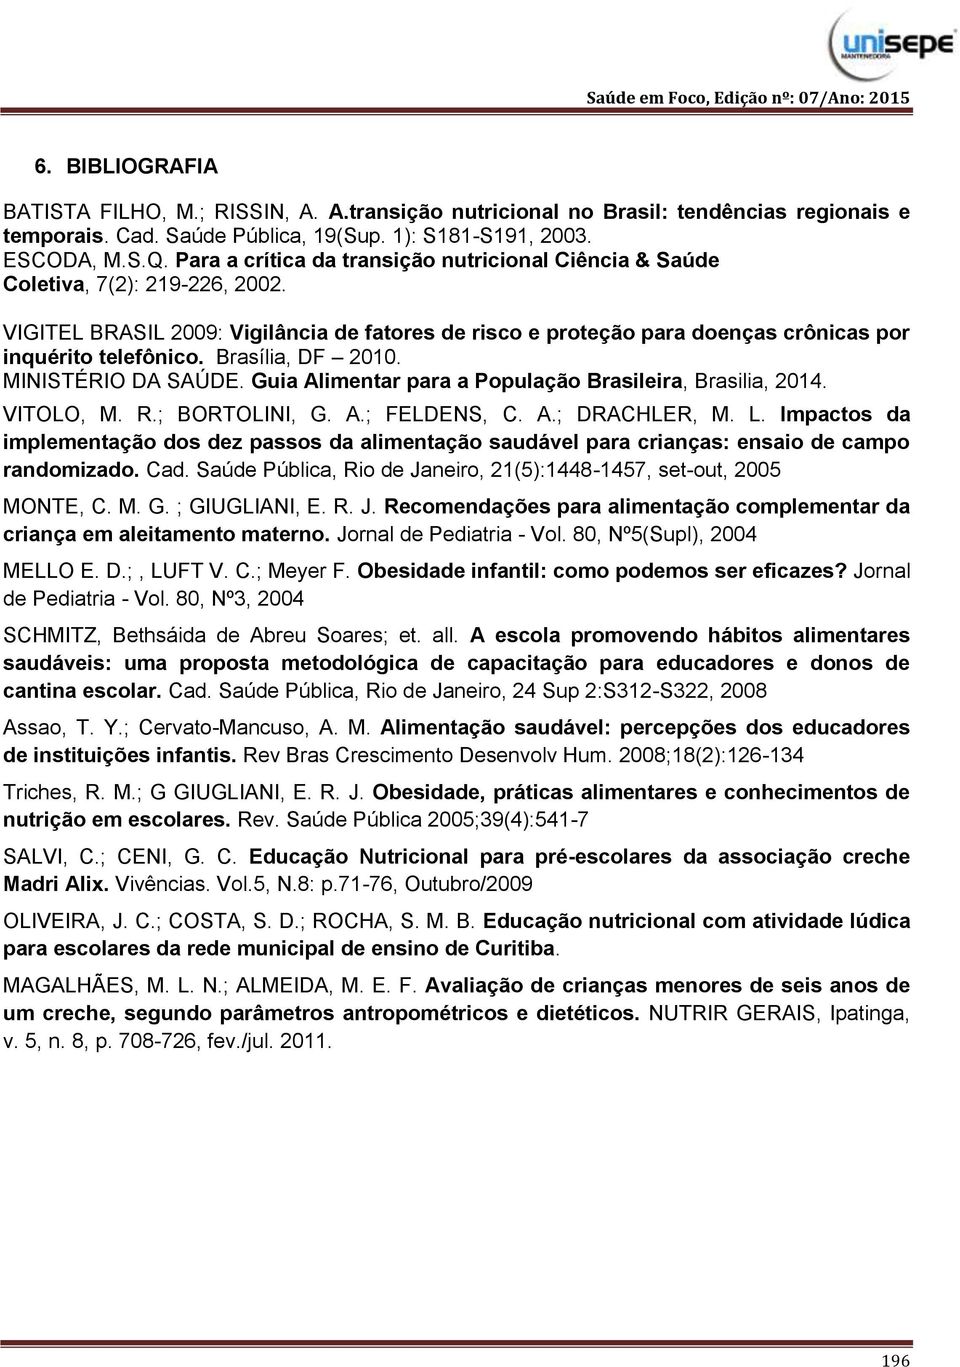 Brasília, DF 2010. MINISTÉRIO DA SAÚDE. Guia Alimentar para a População Brasileira, Brasilia, 2014. VITOLO, M. R.; BORTOLINI, G. A.; FELDENS, C. A.; DRACHLER, M. L.